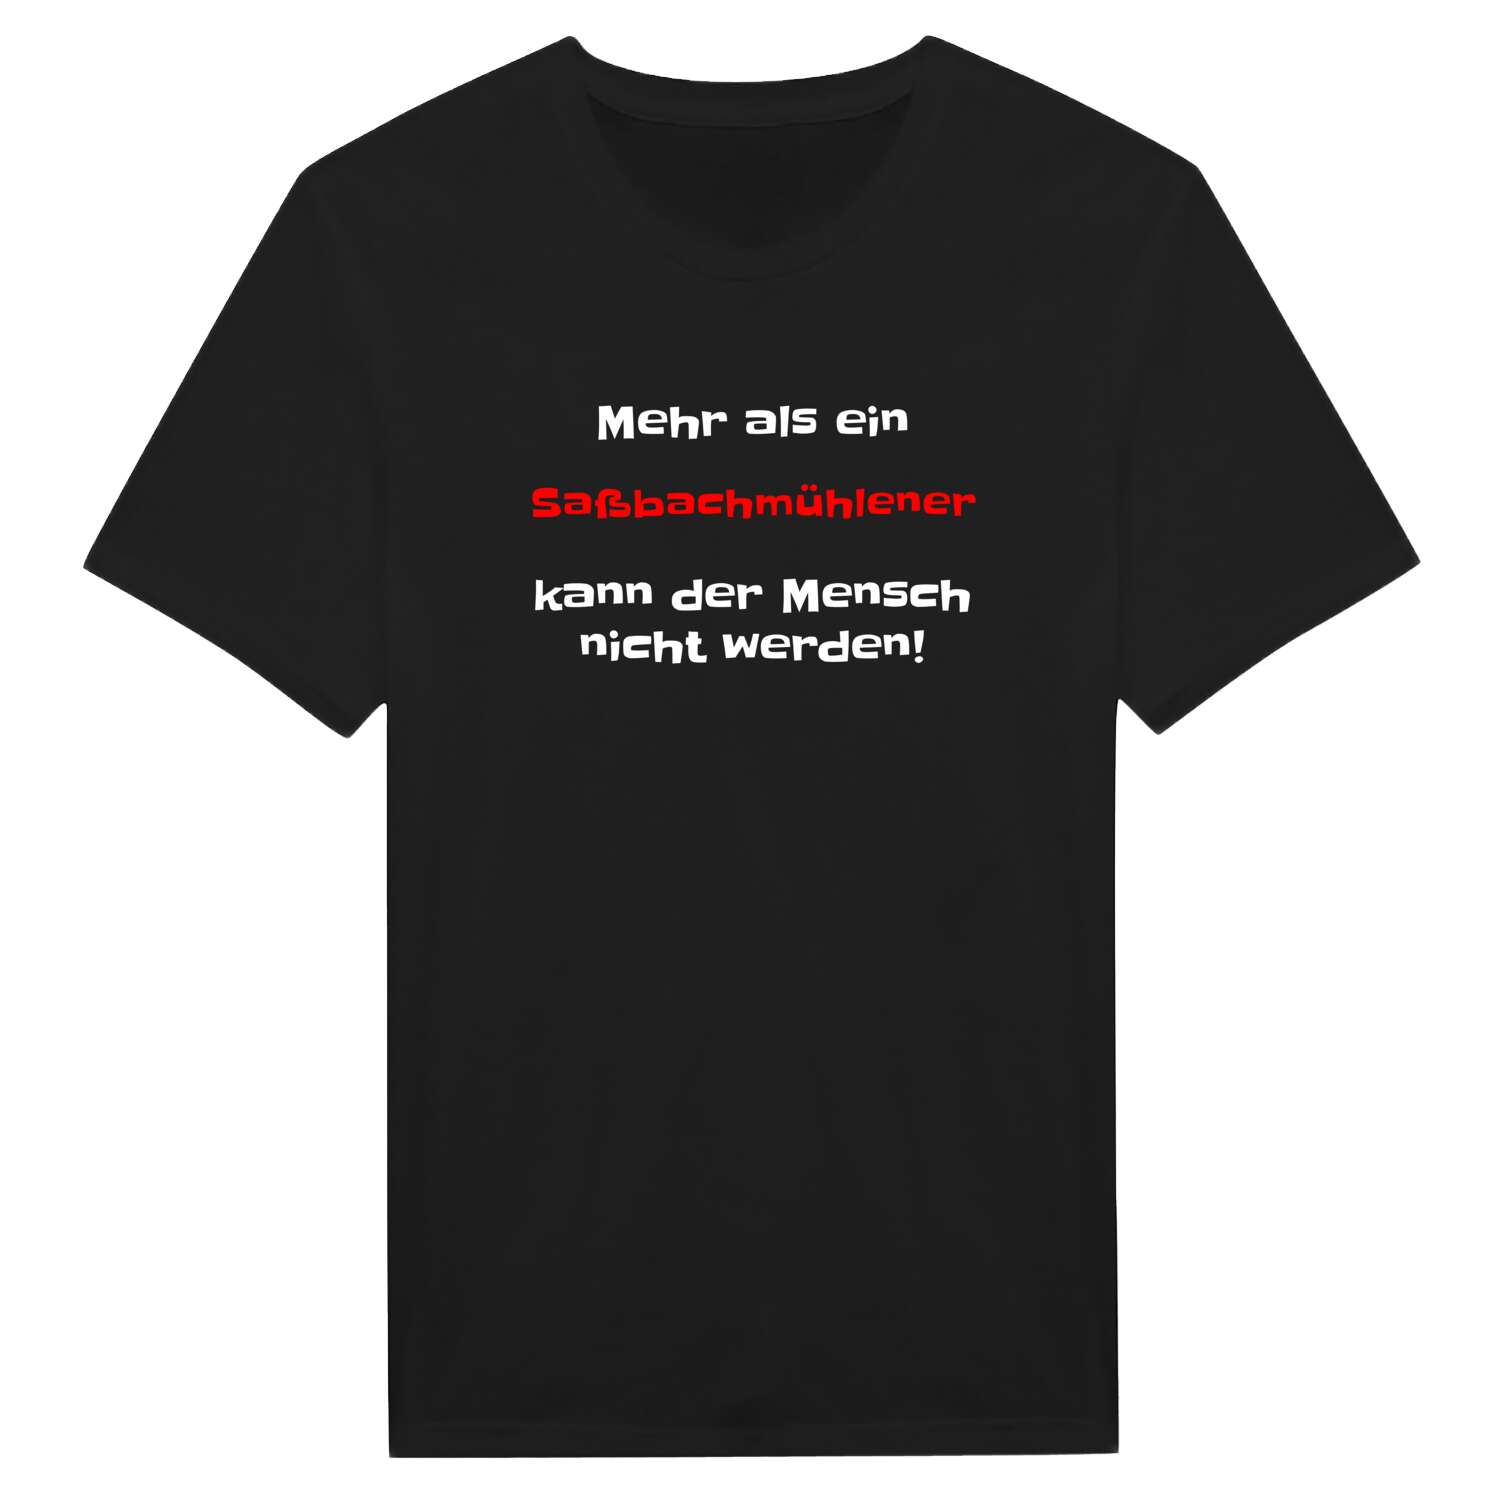 Saßbachmühle T-Shirt »Mehr als ein«